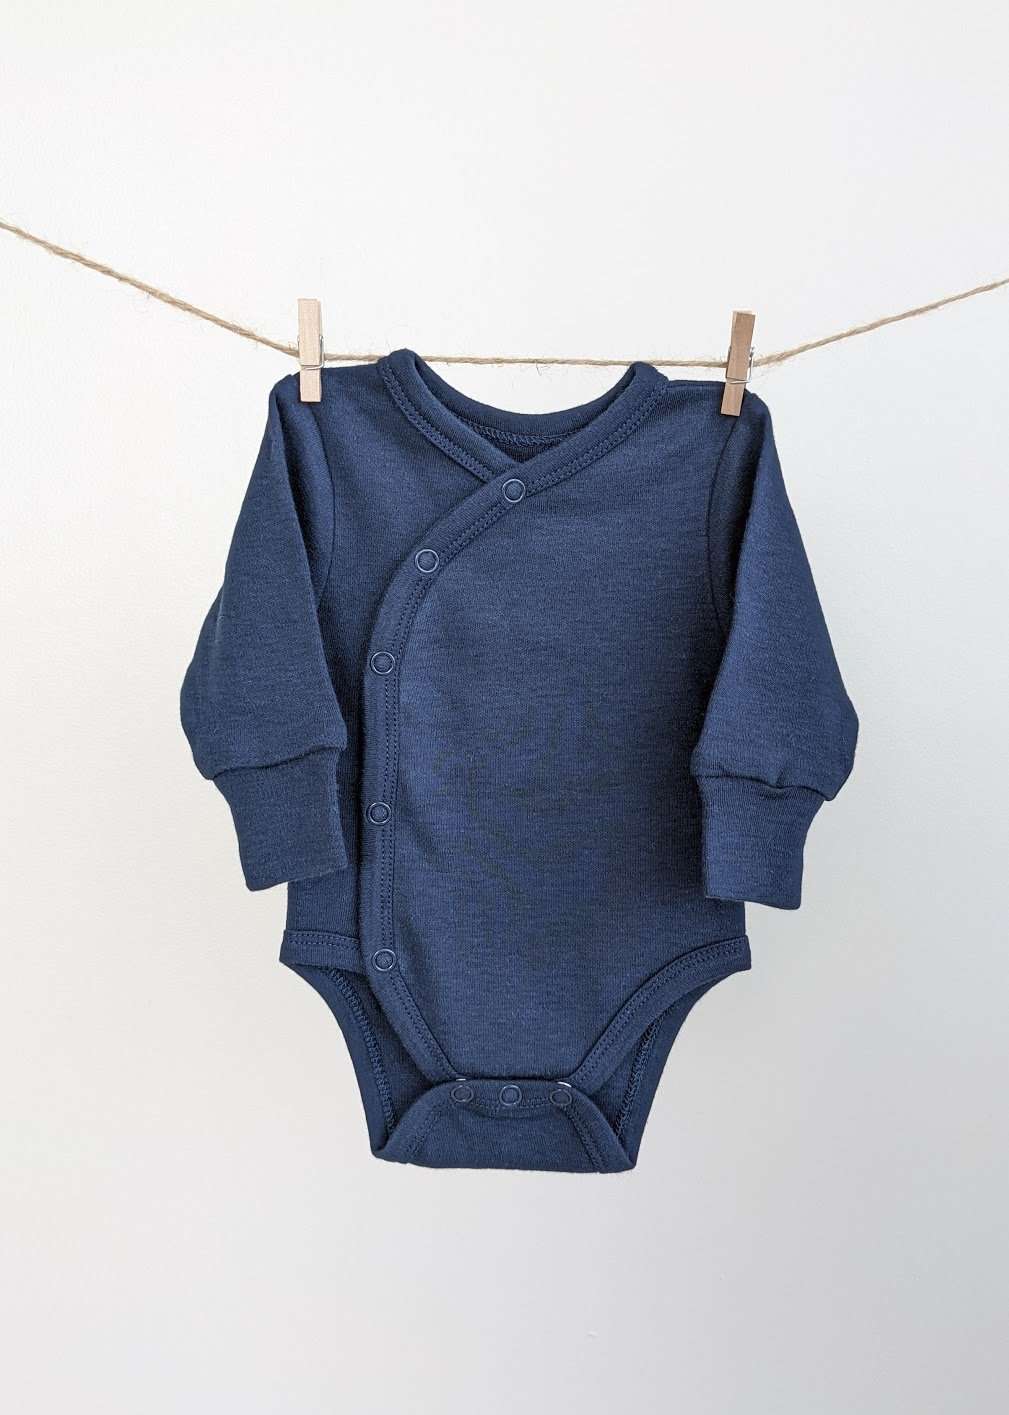 Long Sleeve Kimono Baby Bodysuit: Deep Ocean Blue